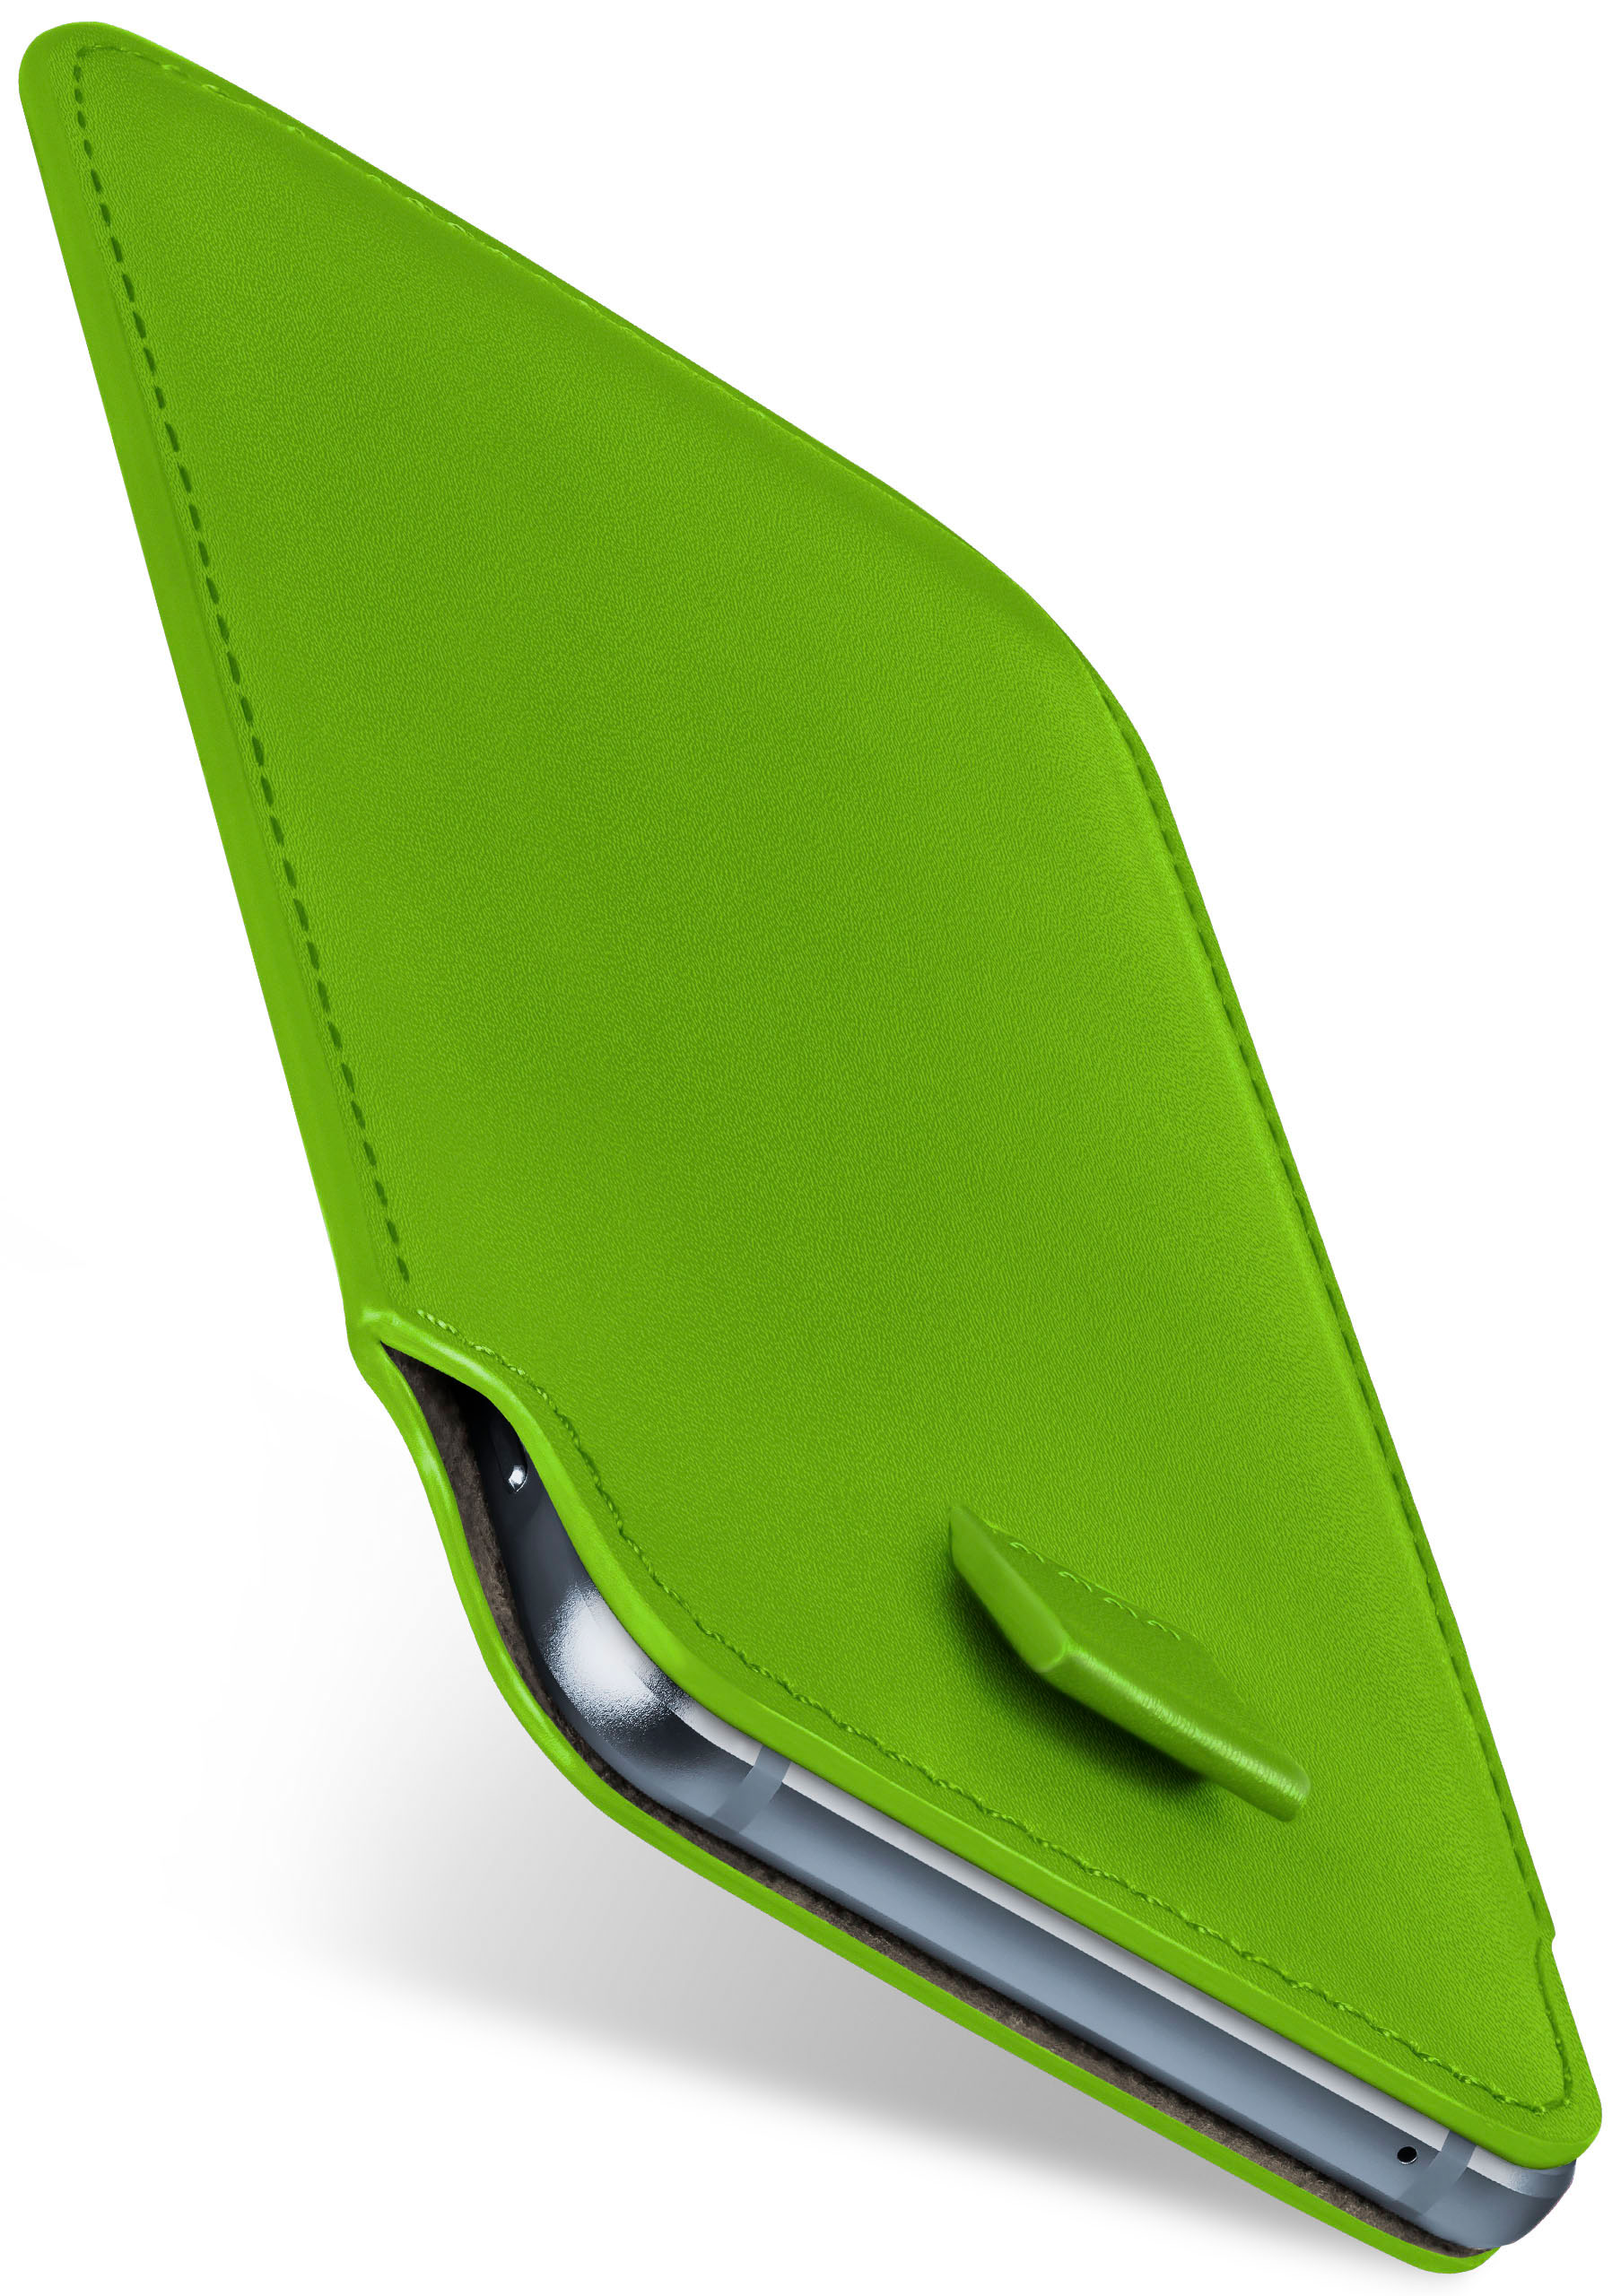 MOEX Slide Acer, Lime-Green Case, Plus, Zest Liquid Cover, Full